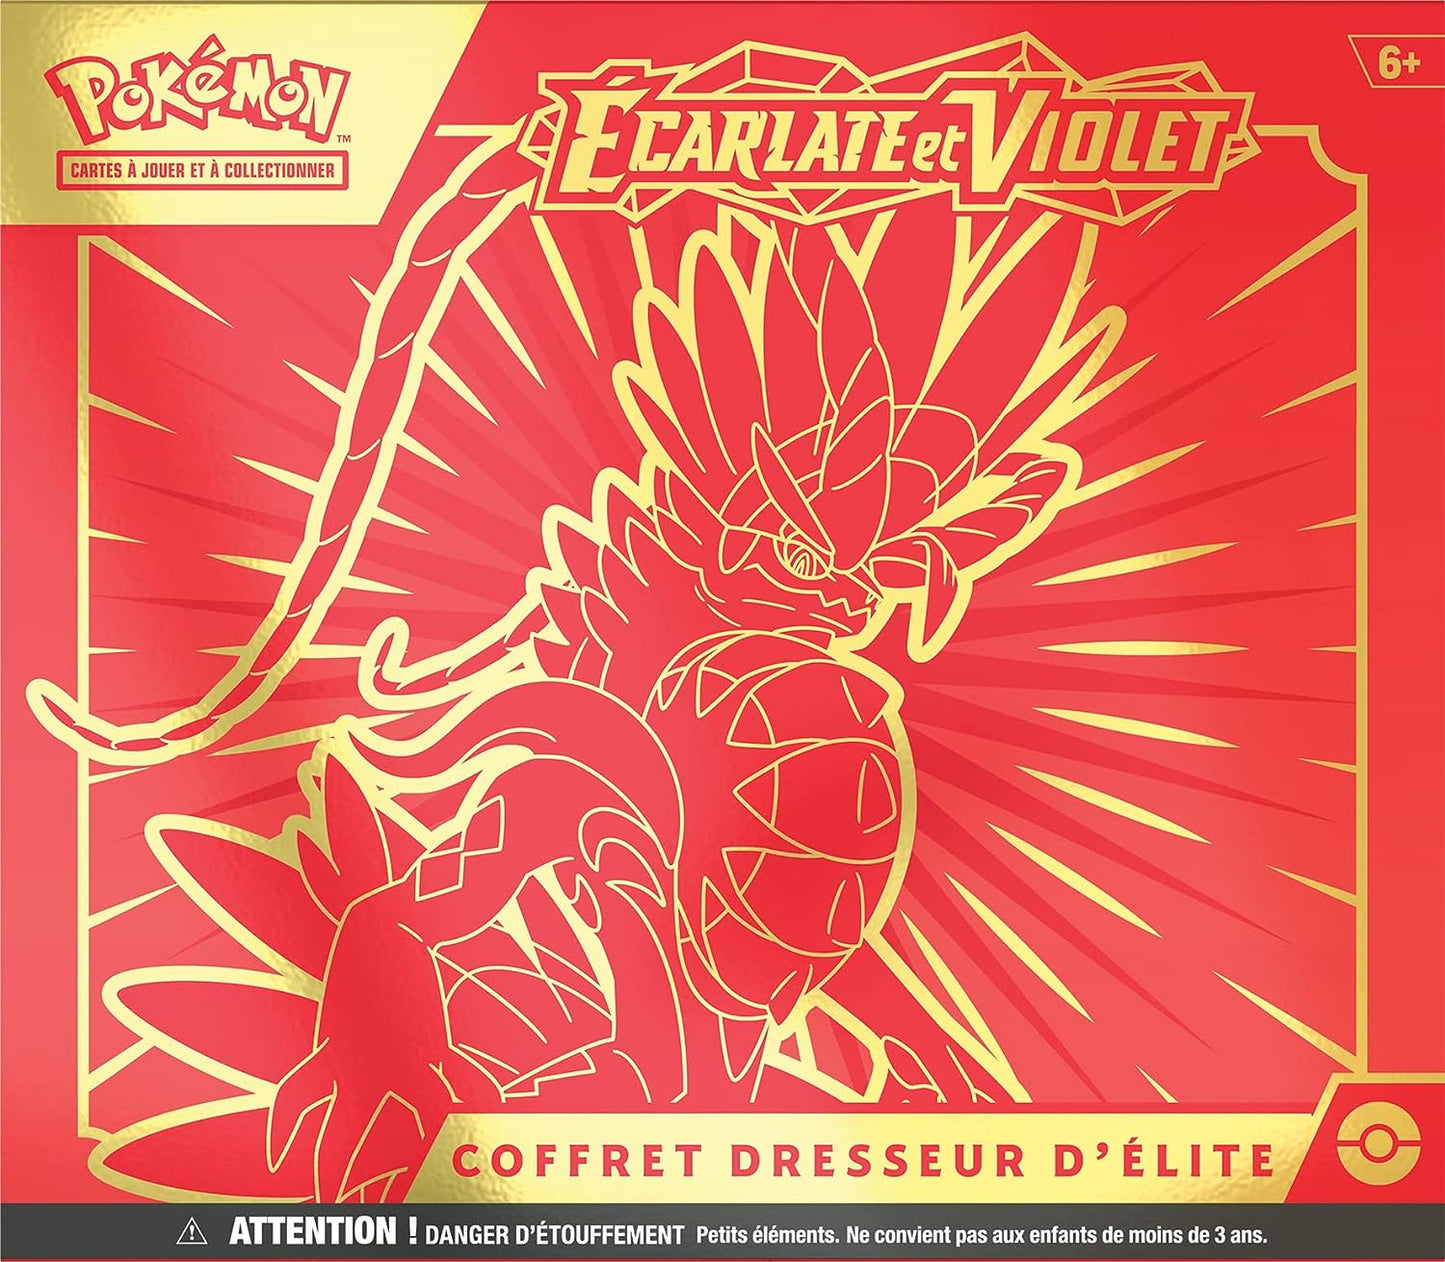 Pokémon - Coffret dresseur d’Elite Ecarlate & Violet ETB Série 1 - EV01 - Neuf sous blister